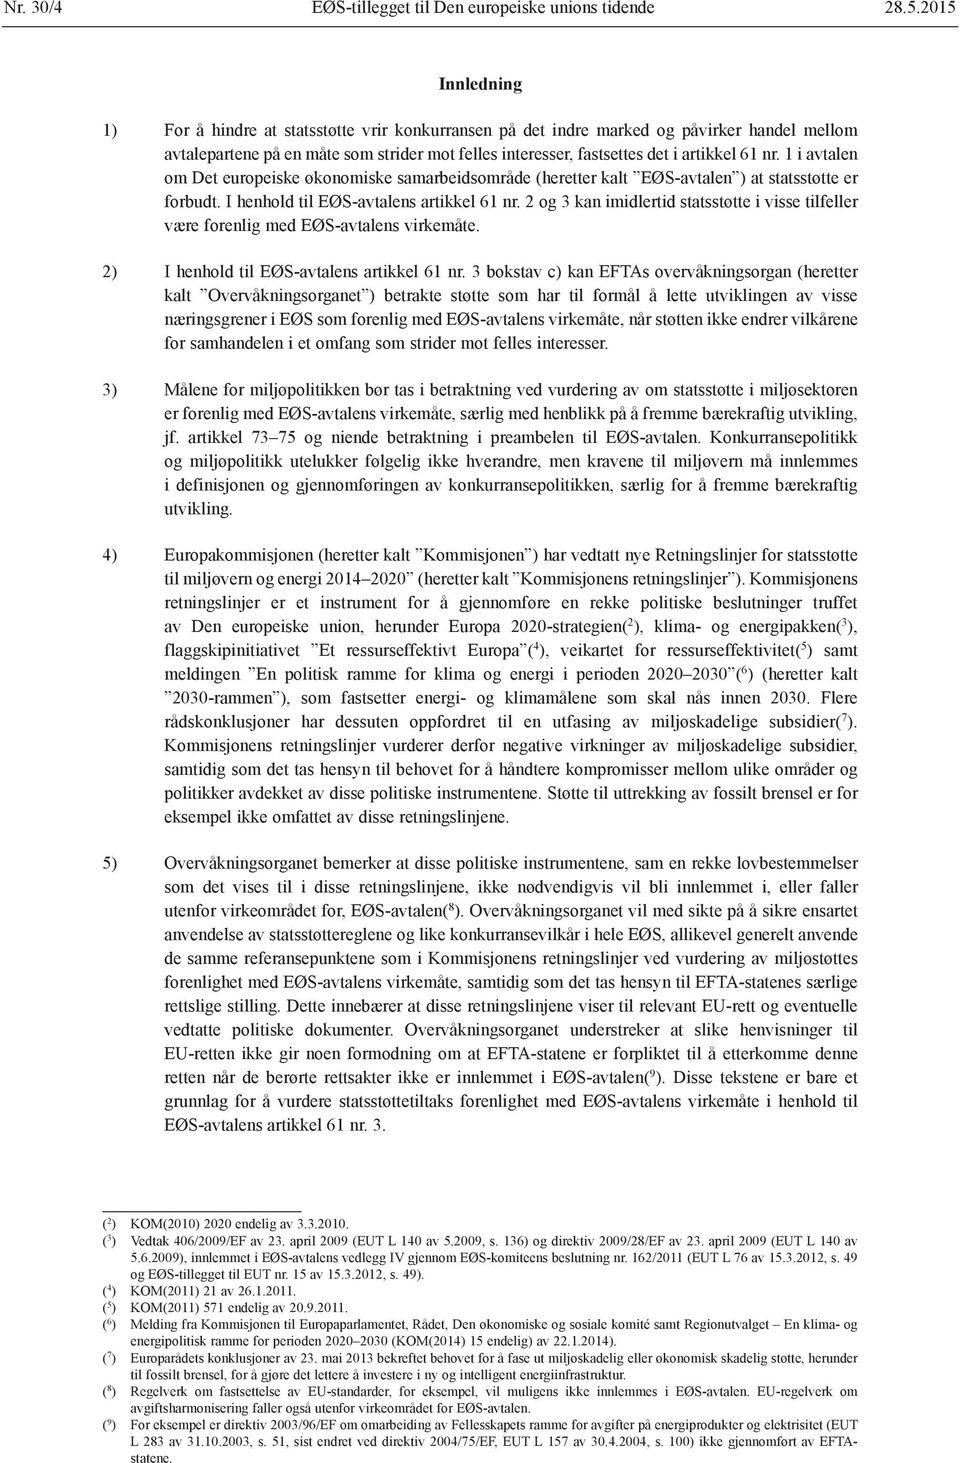 nr. 1 i avtalen om Det europeiske økonomiske samarbeidsområde (heretter kalt EØS-avtalen ) at statsstøtte er forbudt. I henhold til EØS-avtalens artikkel 61 nr.